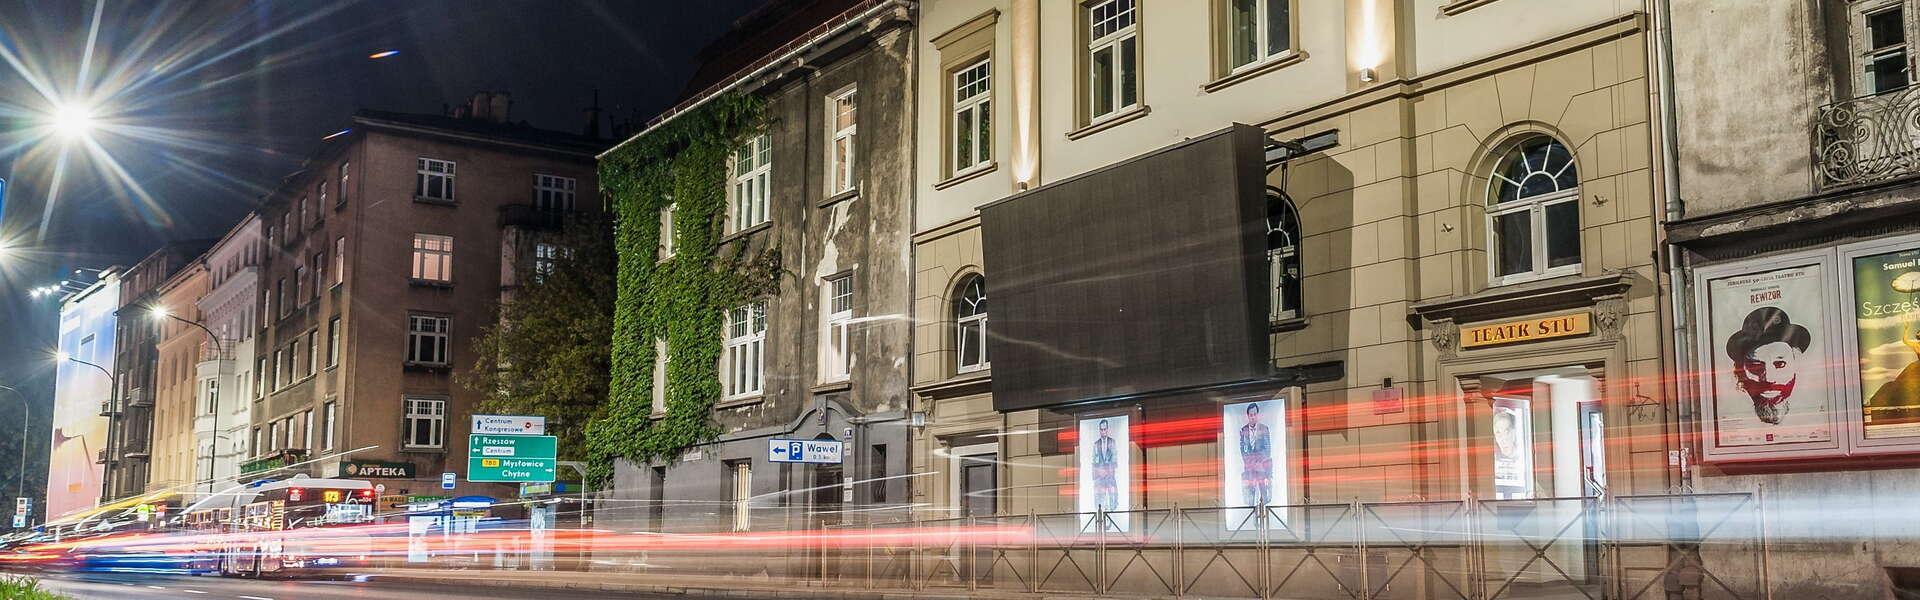 Das Gebäude des STU-Theaters in der Straßenzeile an der al. Zygmunta Krasińskiego bei Nacht